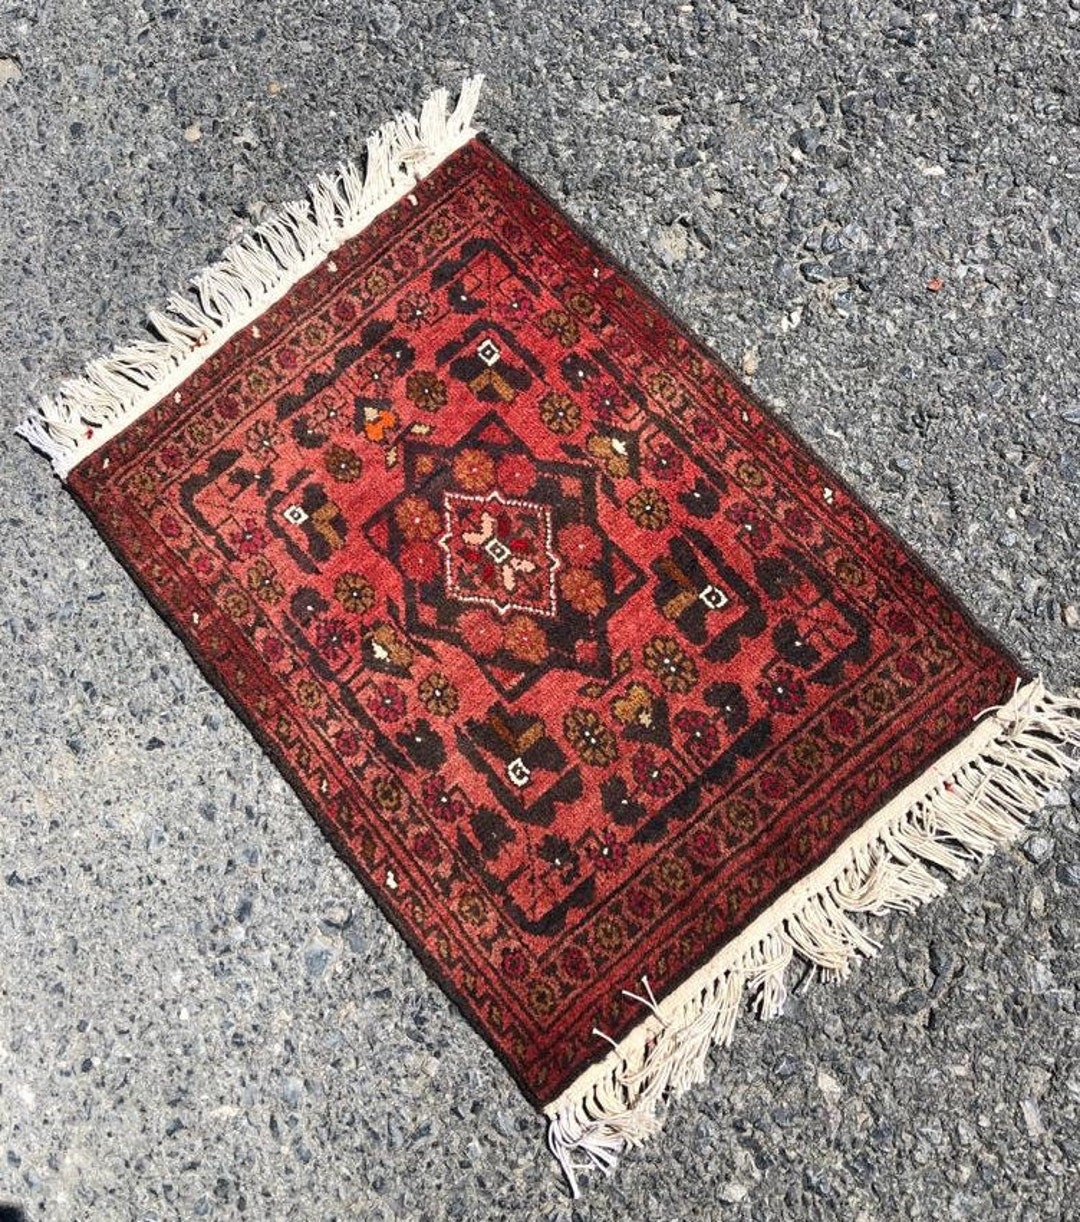 Afghanistan rug ①